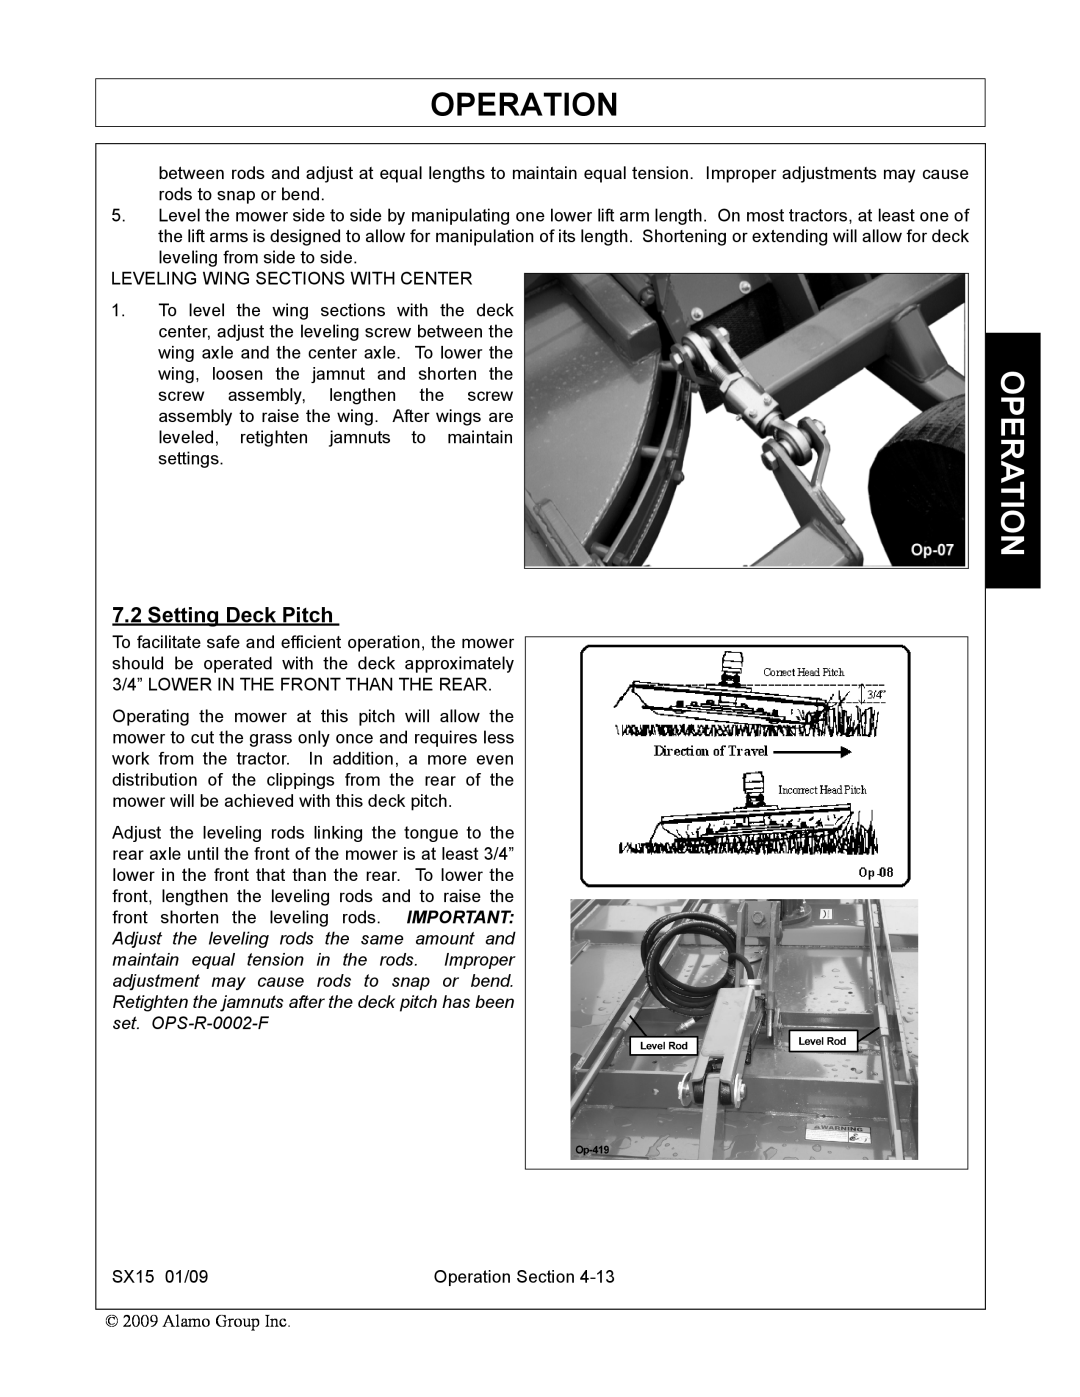 Alamo SX15 manual Setting Deck Pitch, Operation 